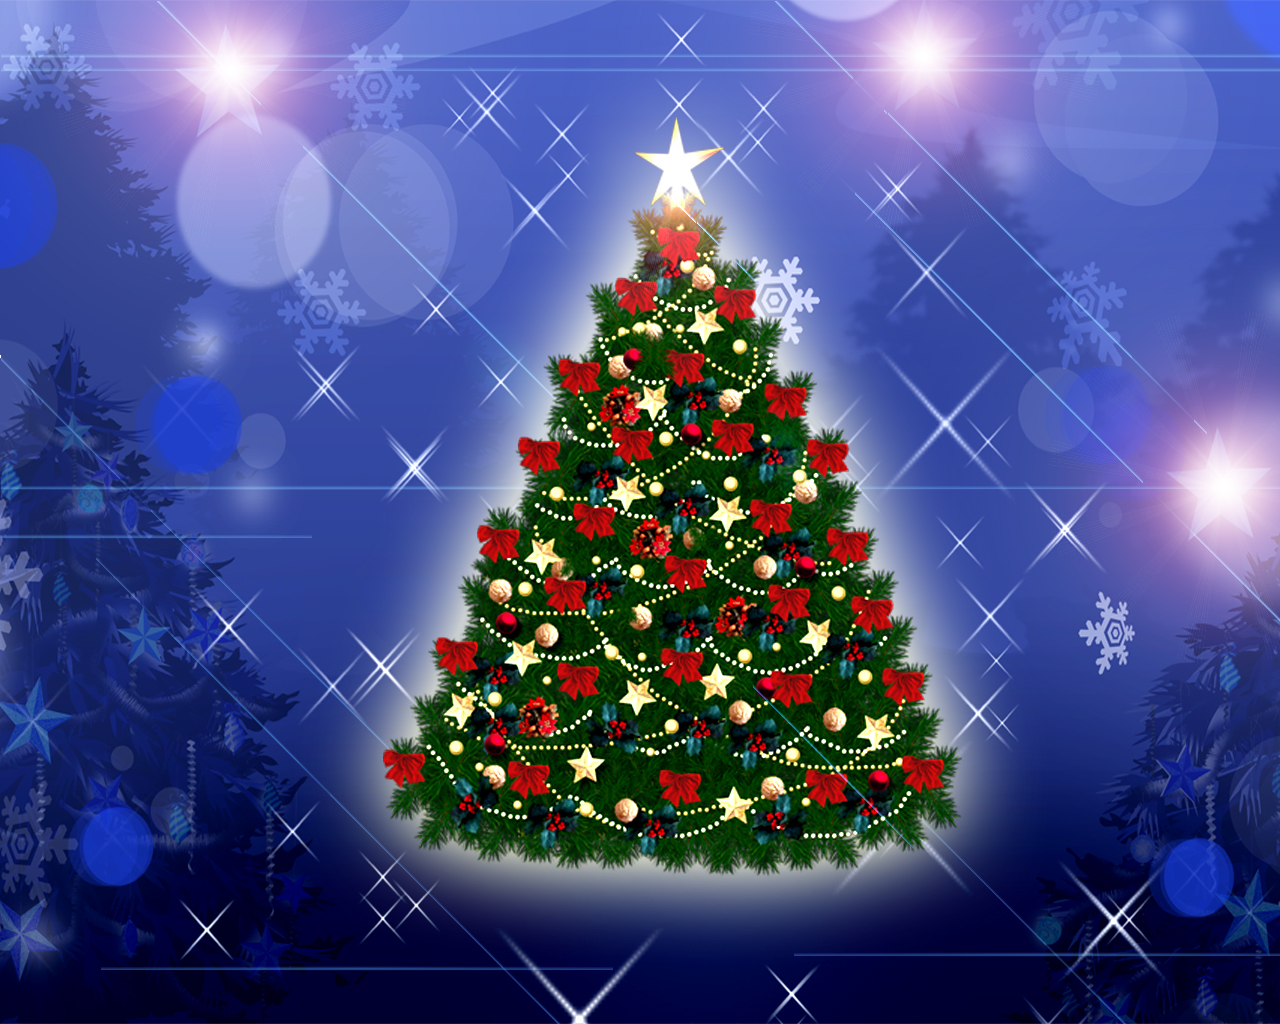 navidad laptop wallpaper,árbol de navidad,decoración navideña,navidad,decoración navideña,abeto de colorado